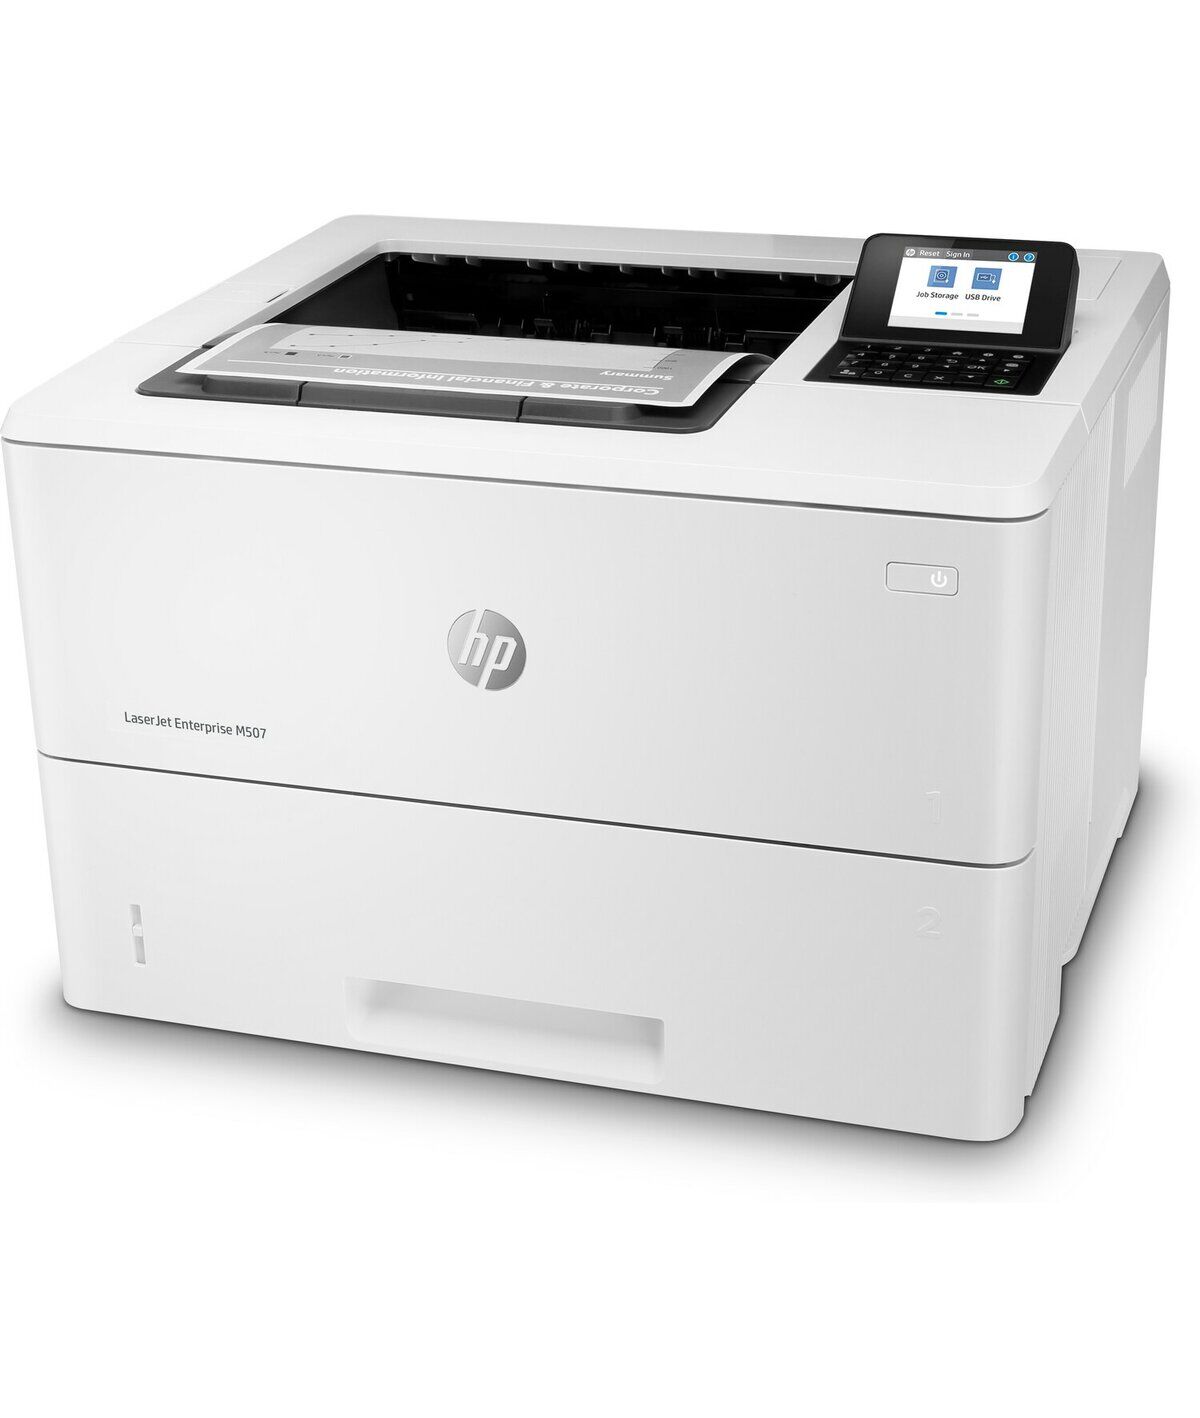 Принтер HP HP LaserJet Enterprise M507dn 1PV87A/A4 черно-белый/печать Лазерный 1200x1200dpi 43стр.мин/Wi-Fi Bluetooth Се